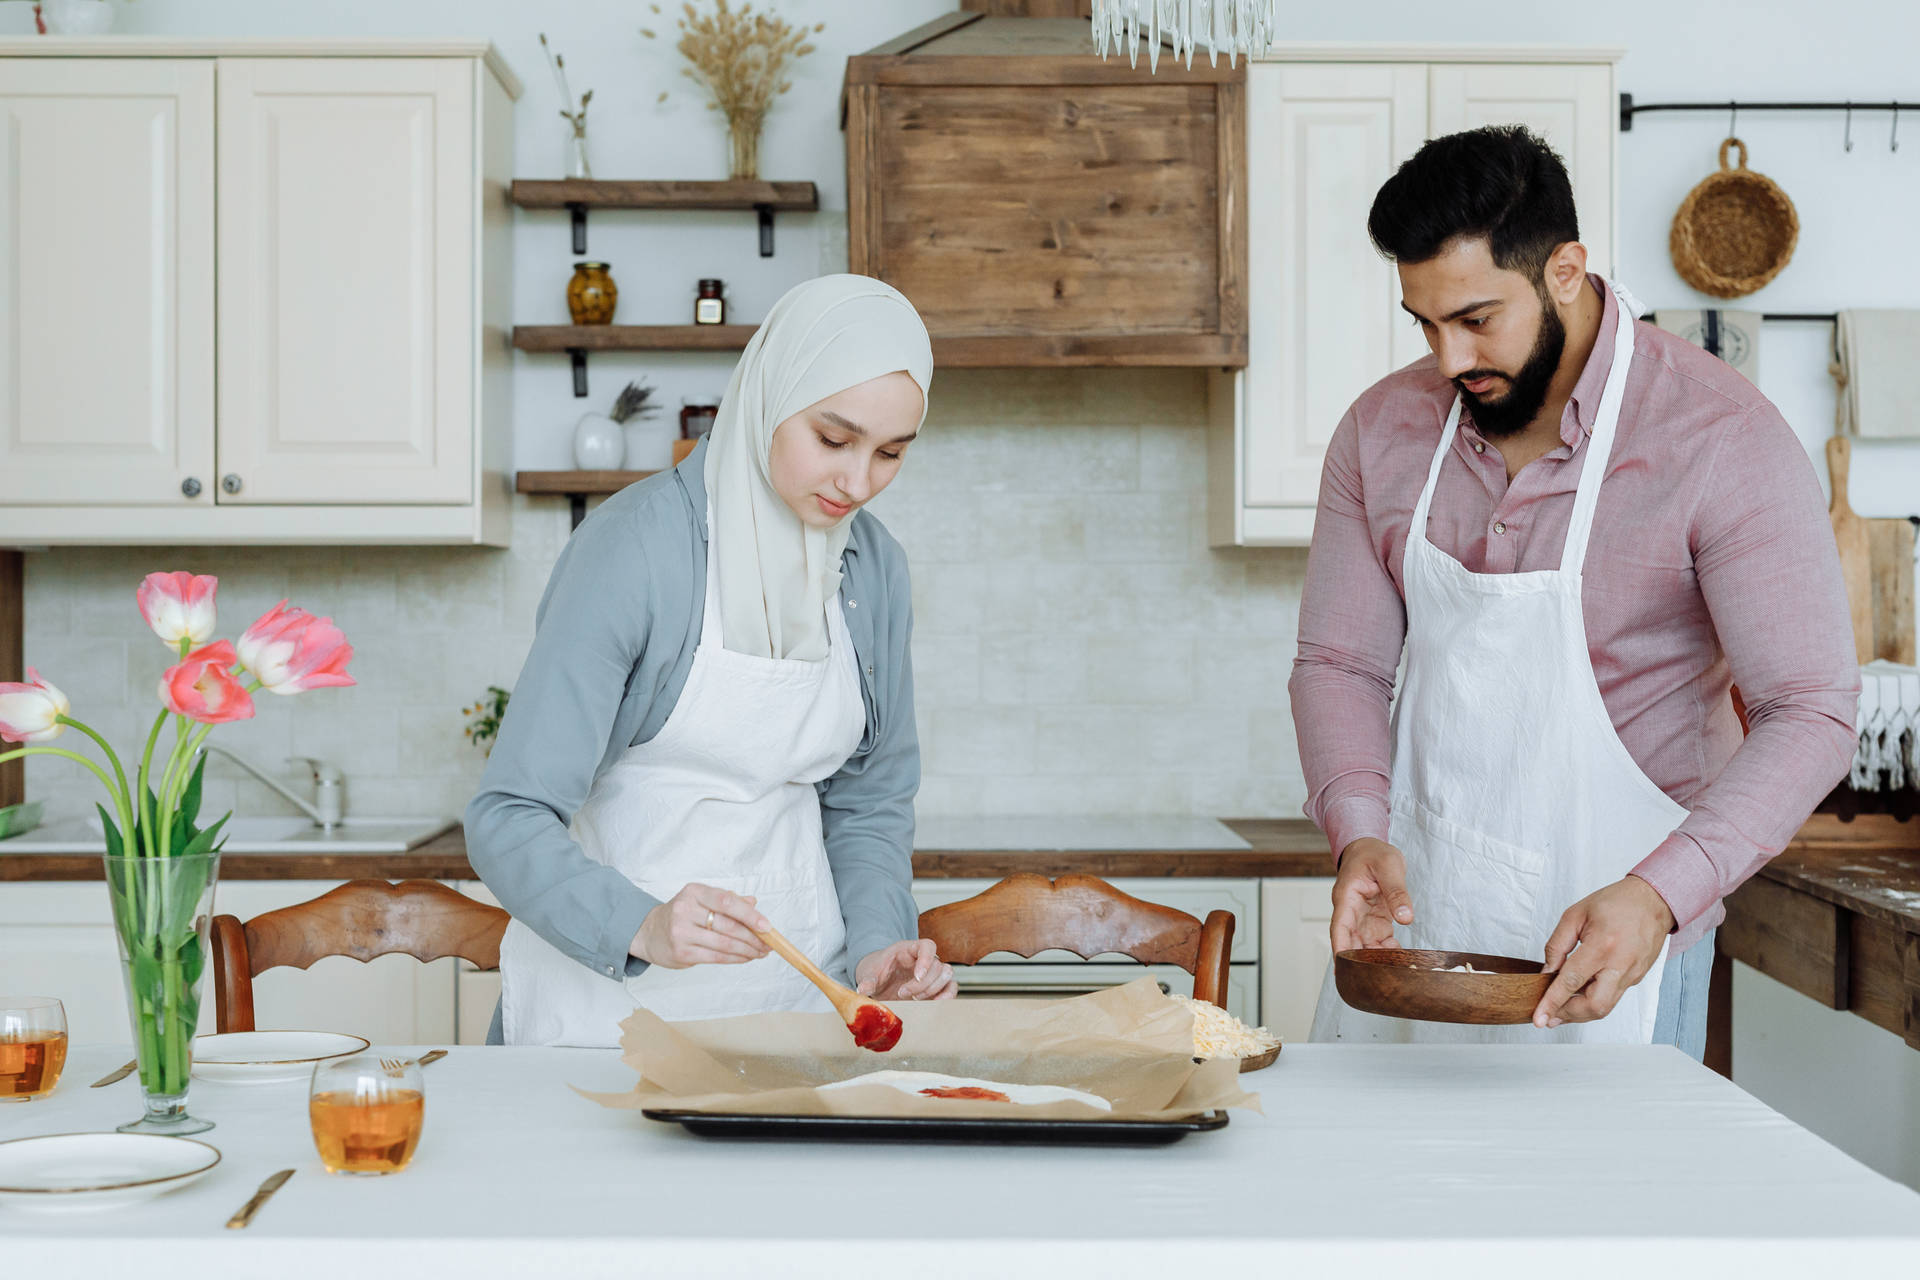 Muslim Couple In Kitchen Background